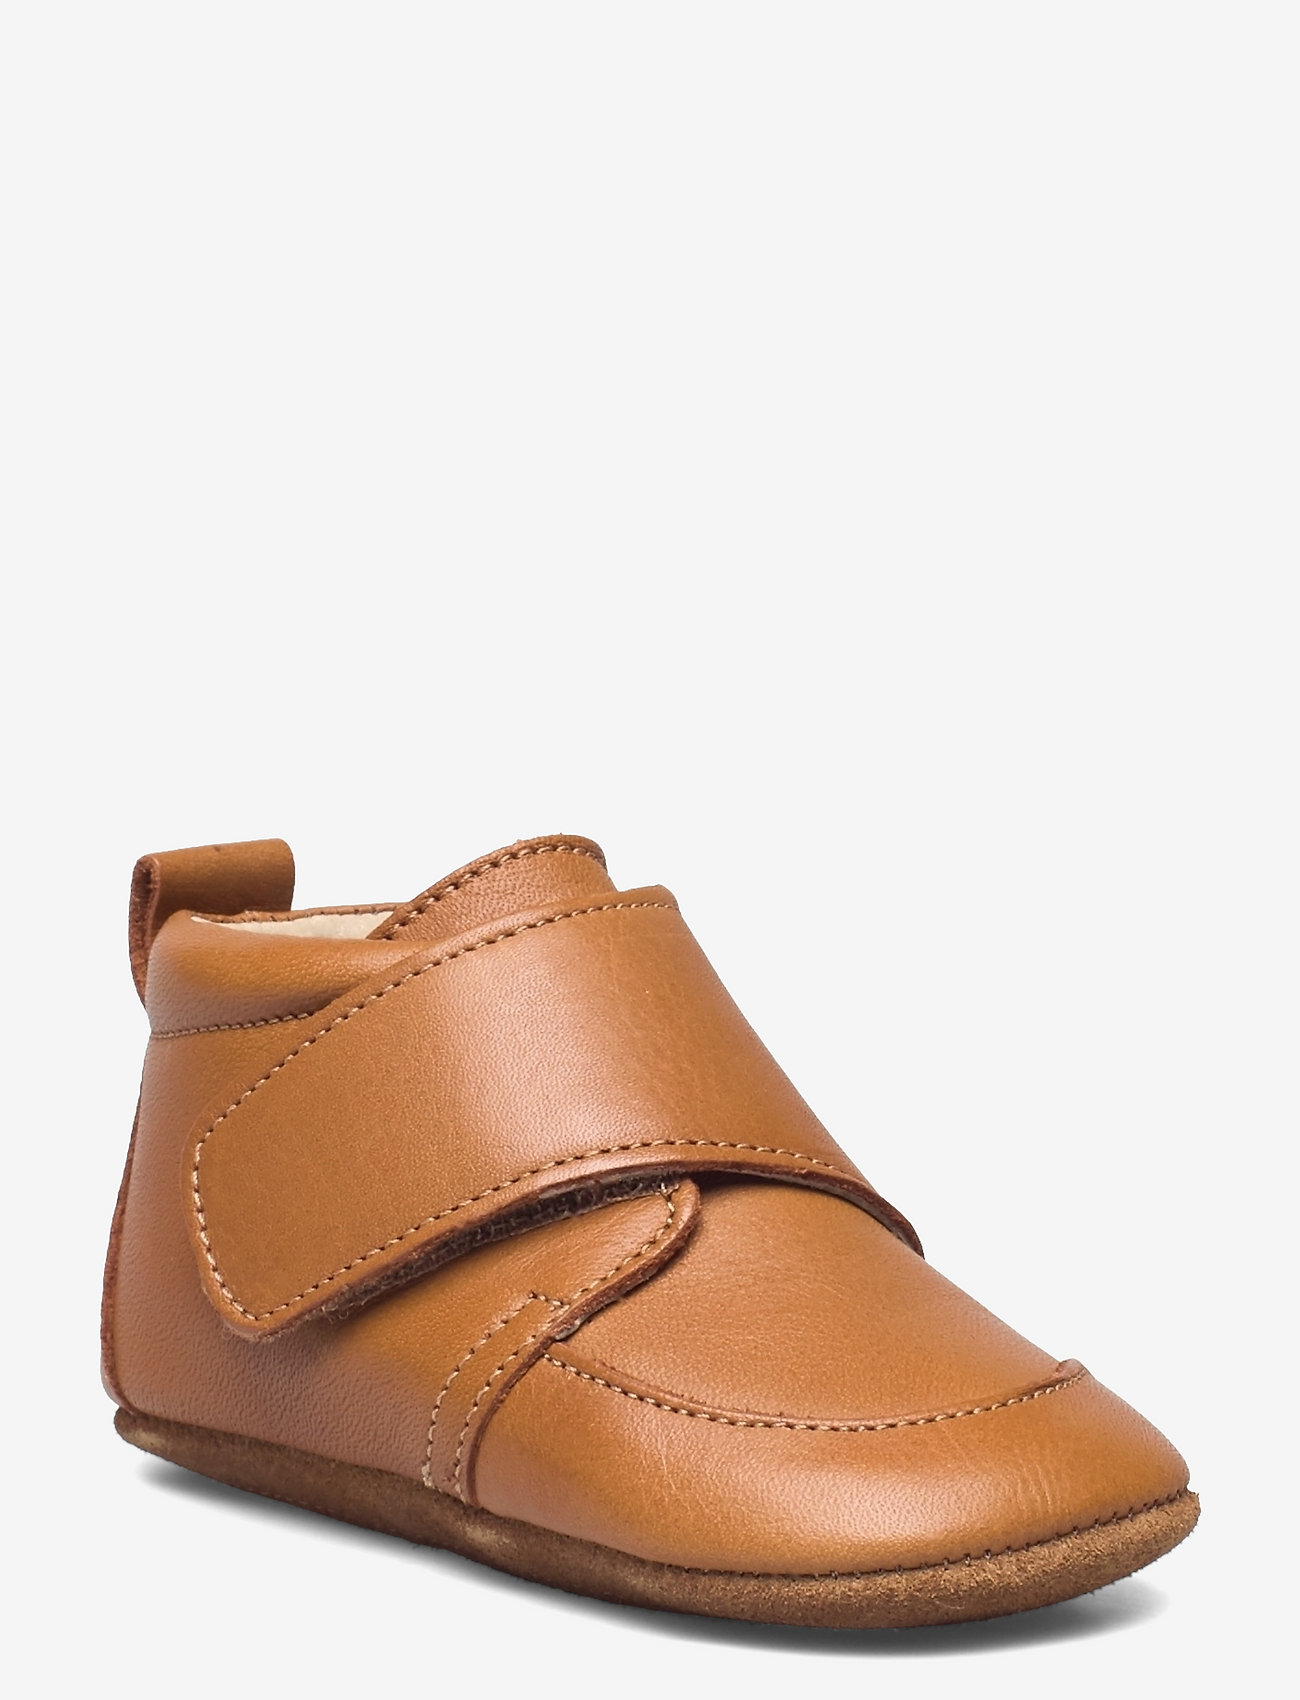 En Fant - Baby Leather slippers - bursdagsgaver - leather brown - 0